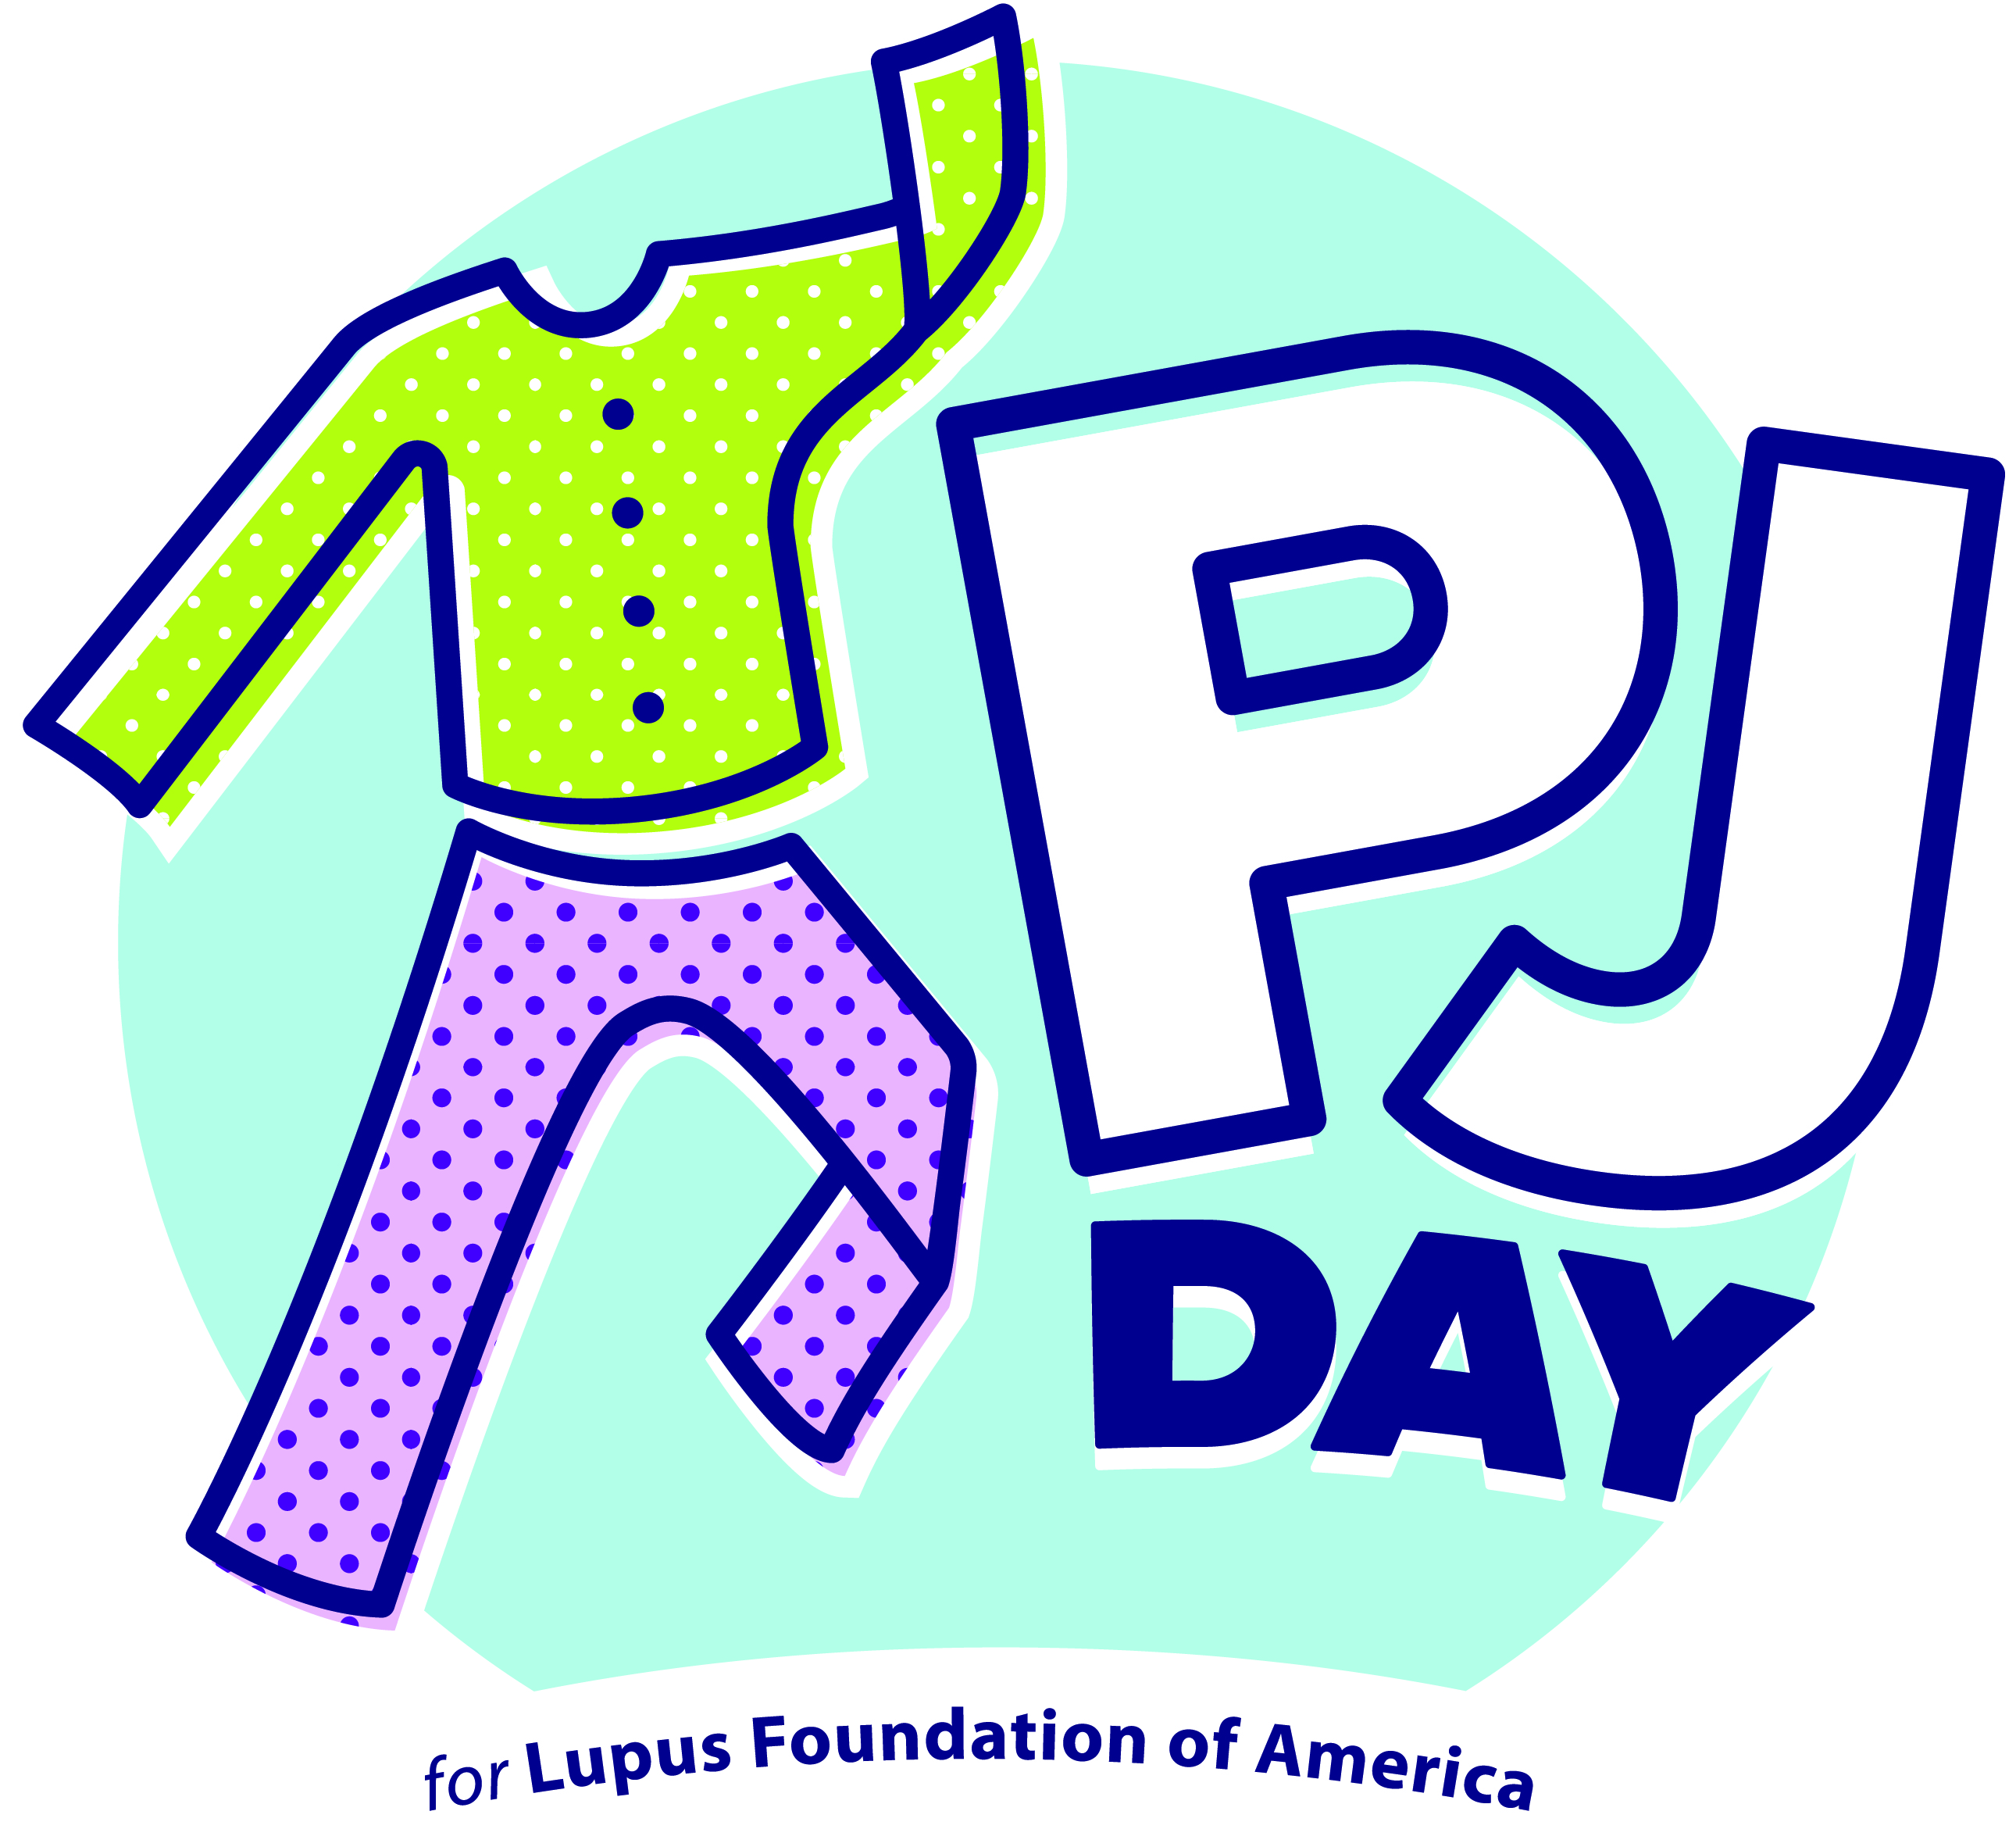 pajama day Pj day lupus foundation of america jpg